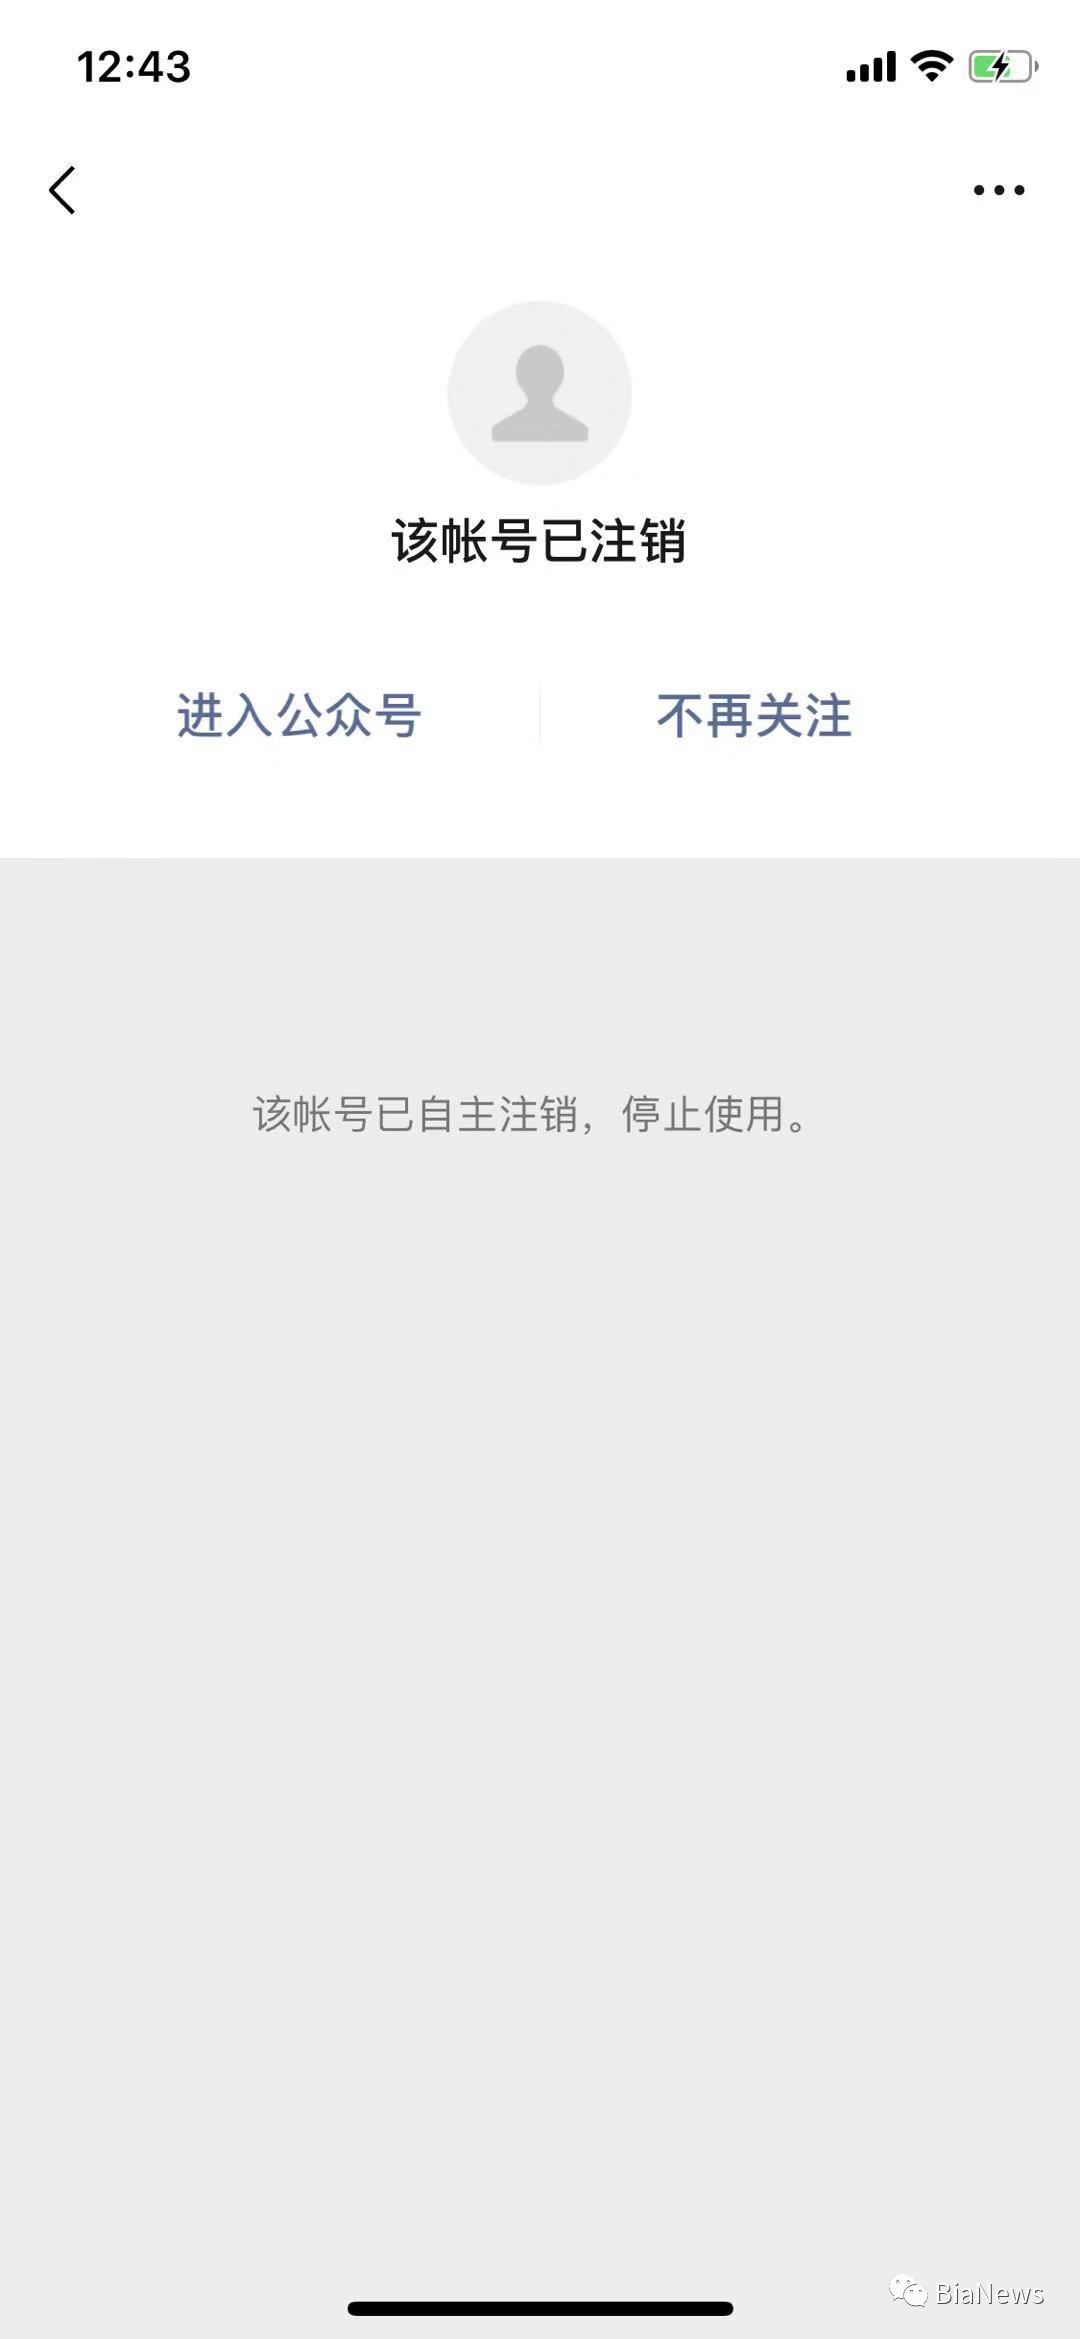 同时,咪蒙旗下另一微信公众号"才华有限青年"也已注销.